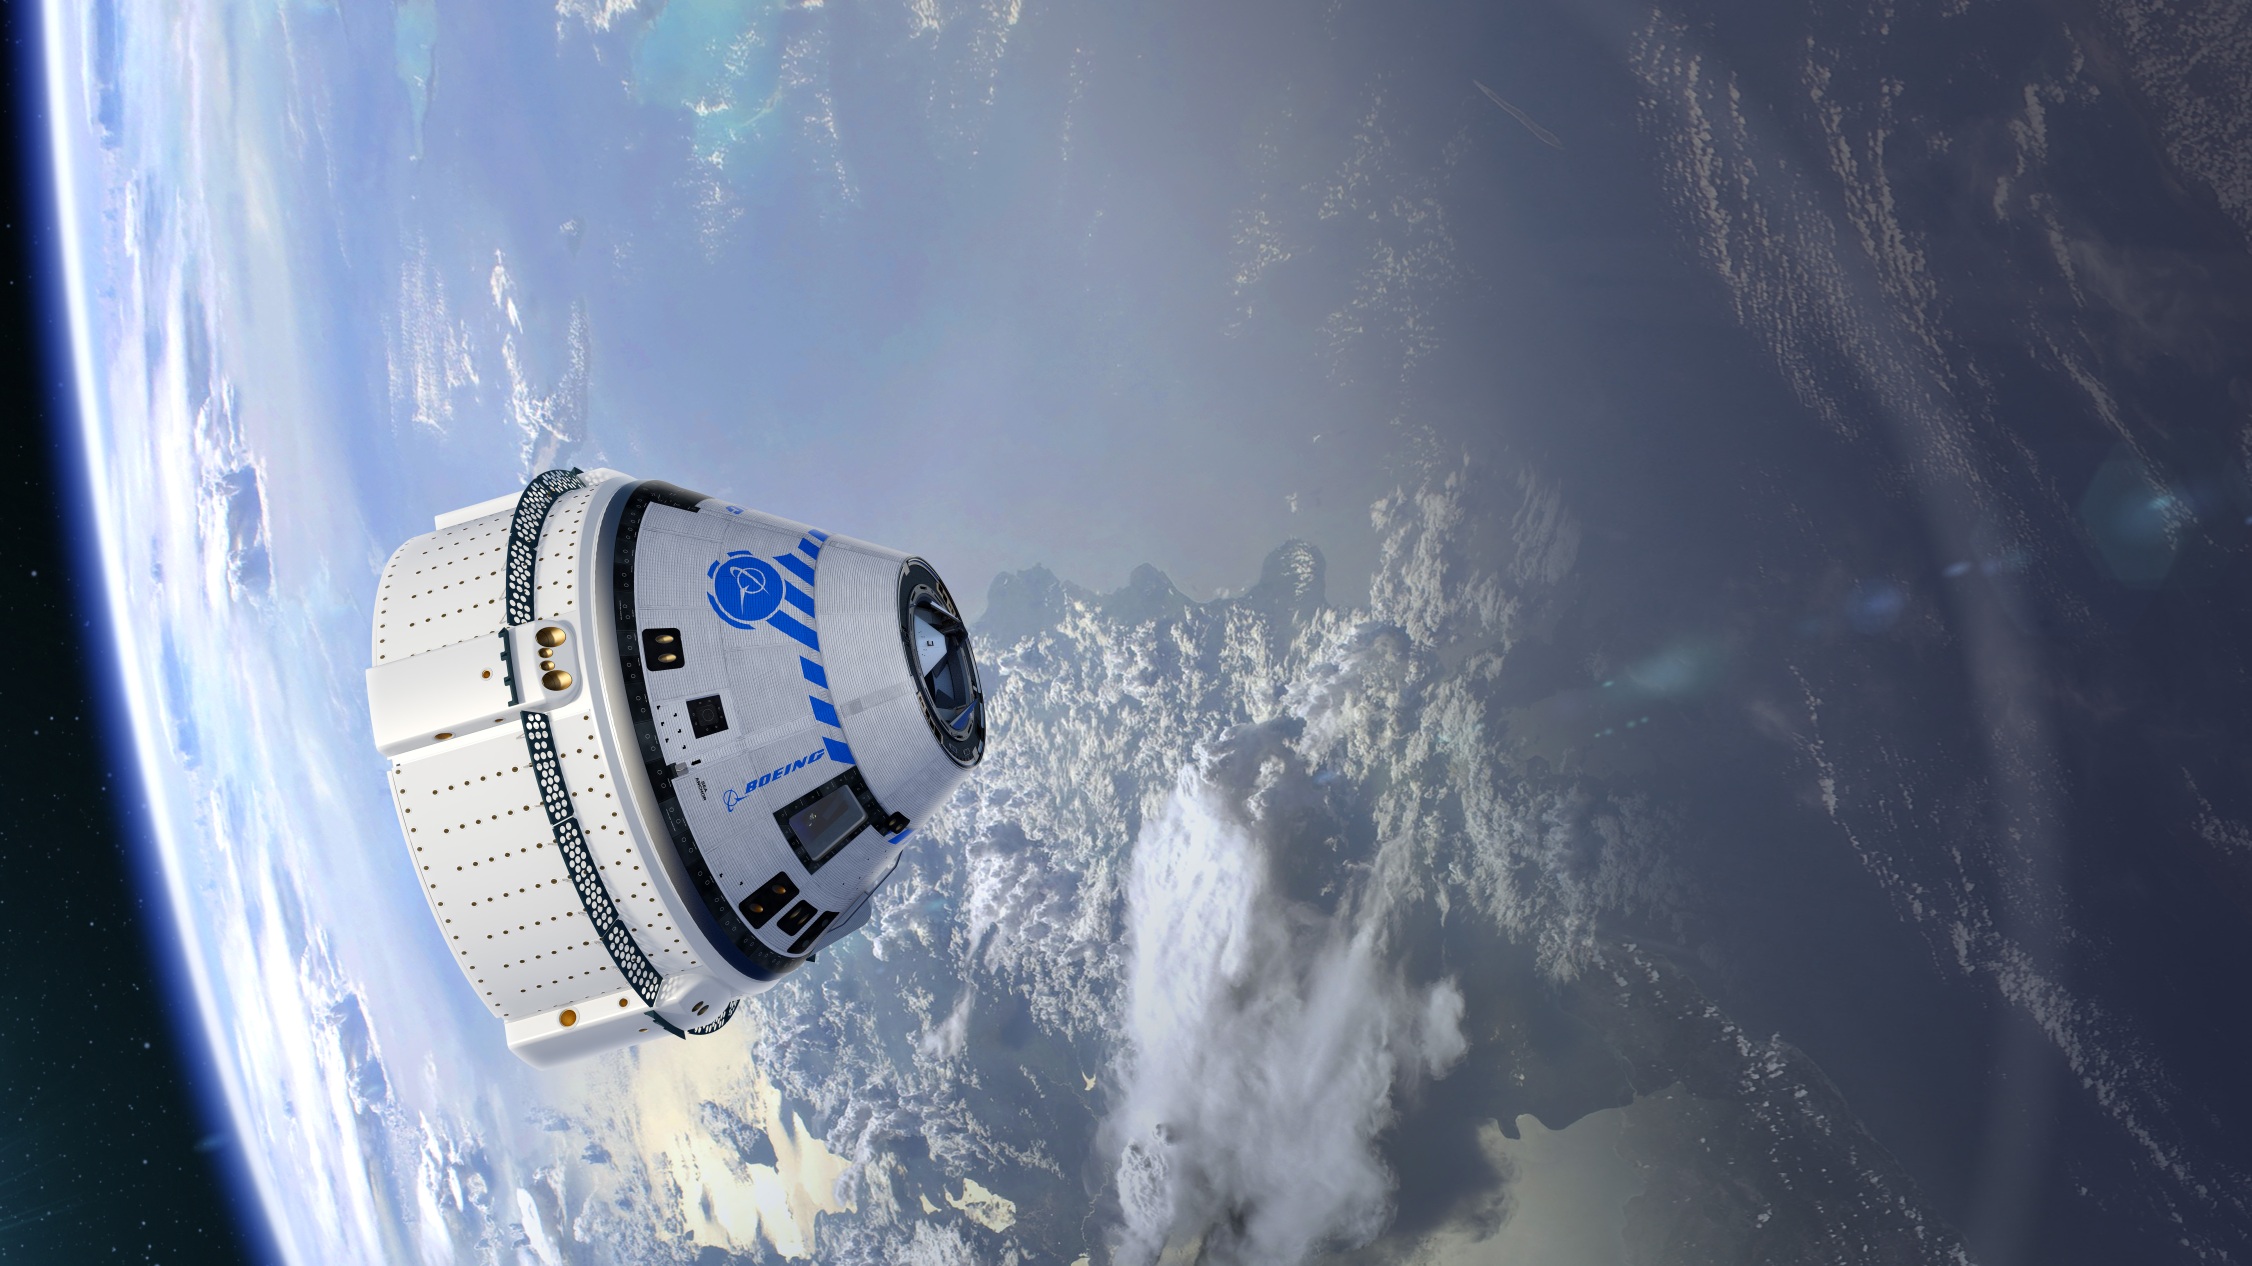 ناسا و بوئینگ برای کمک به بازگرداندن خدمه به خانه در کشتی بوئینگ اکتشافات بزرگی انجام دادند